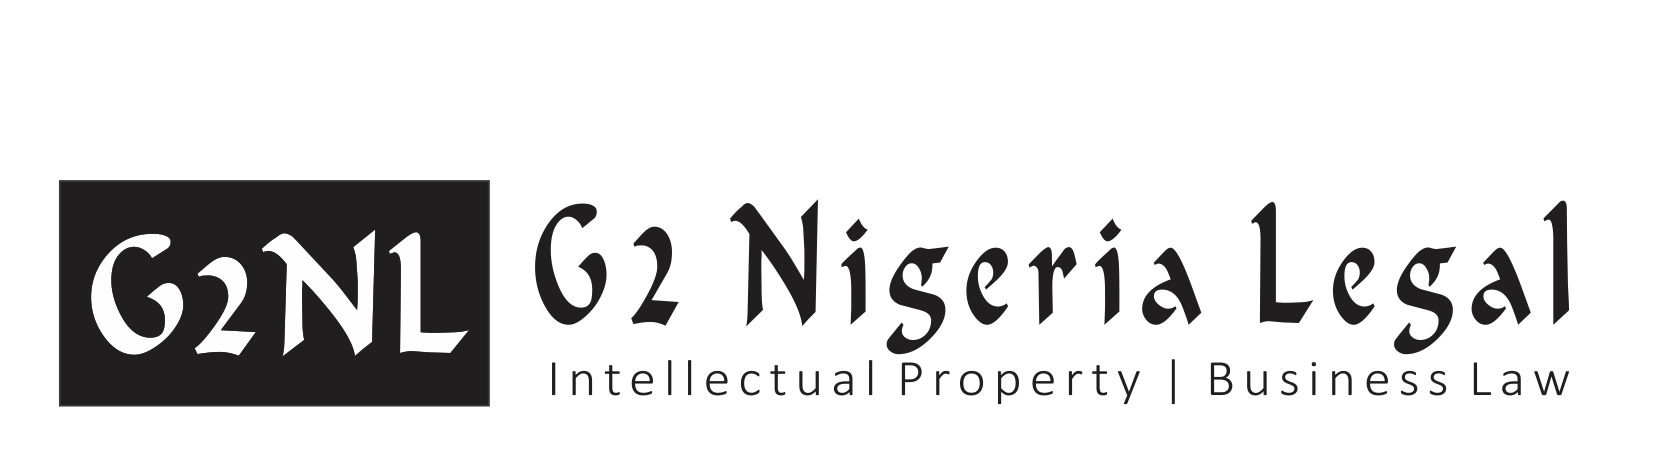 尼日利亞商標律師喺尼日利亞商標律師喺尼日利亞商標律師喺尼日利亞商標律師喺尼日利亞專利律師喺尼日利亞專利律師喺尼日利亞商標律師喺尼日利亞商標和專利律師喺尼日利亞商標和專利律師喺尼日利亞